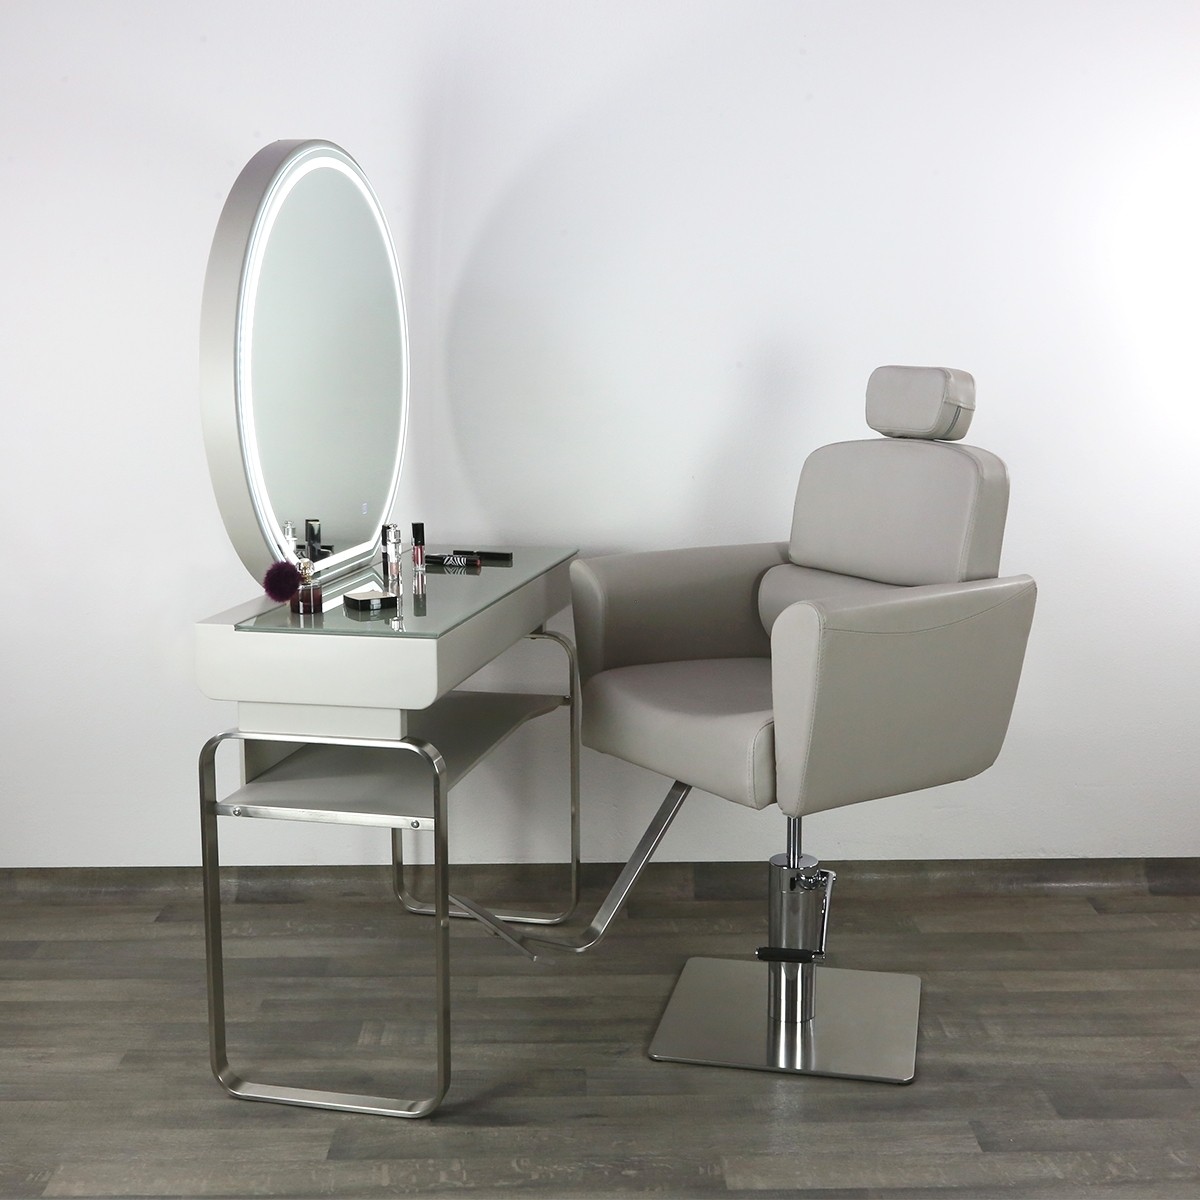 Postazione Completa Make-Up Specchio Tavolo Poltrona Trucco Per Centro  Estetico Salone Estetica Arredamenti Benessere SPA – meeBy attrezzature per  centri estetici